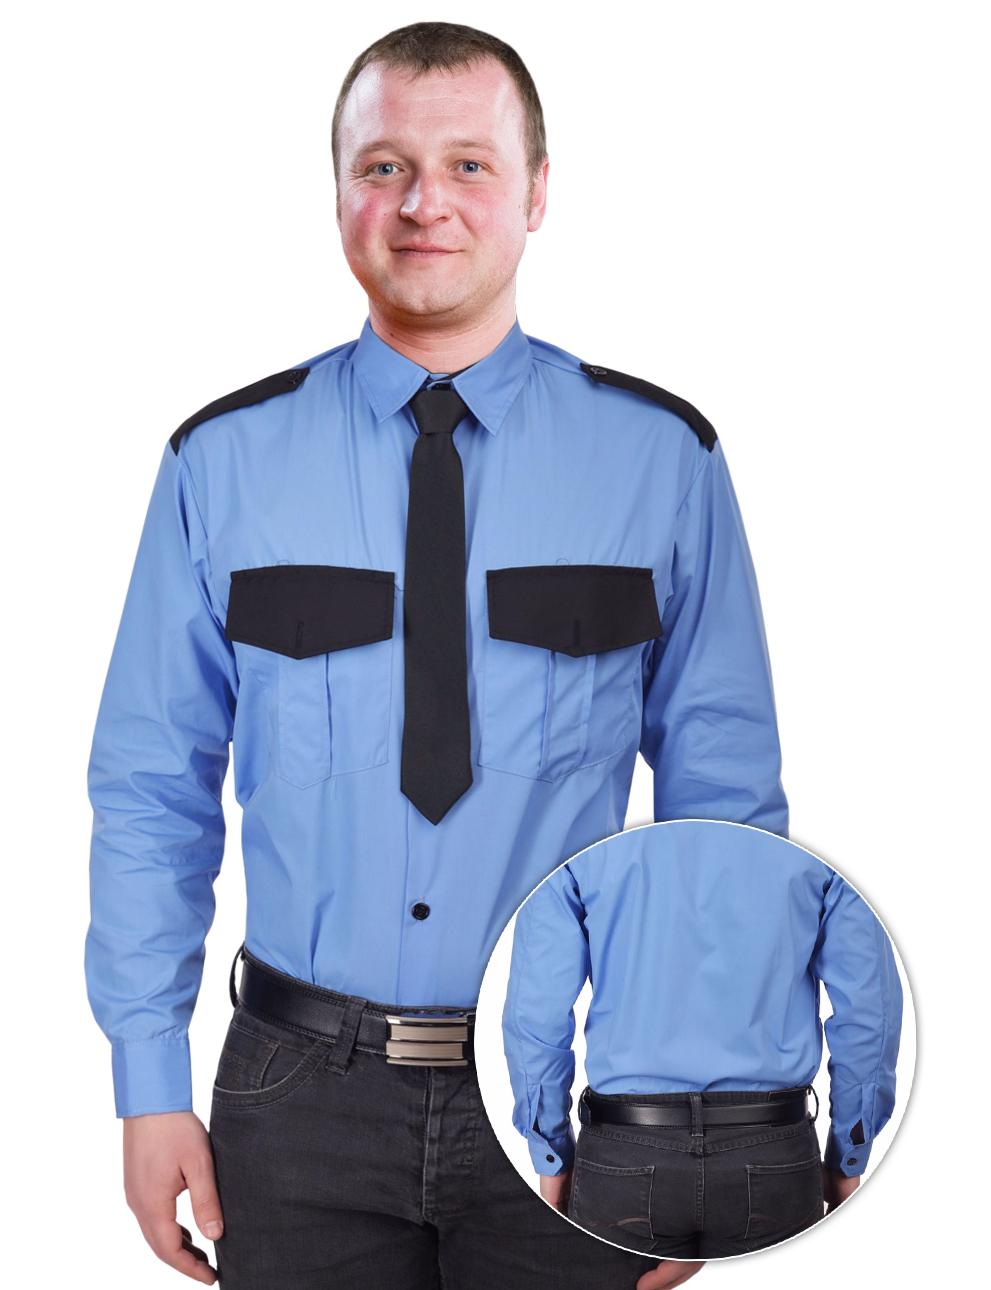 Рубашка Охранника в заправку цв.Голубой длинный рукав 